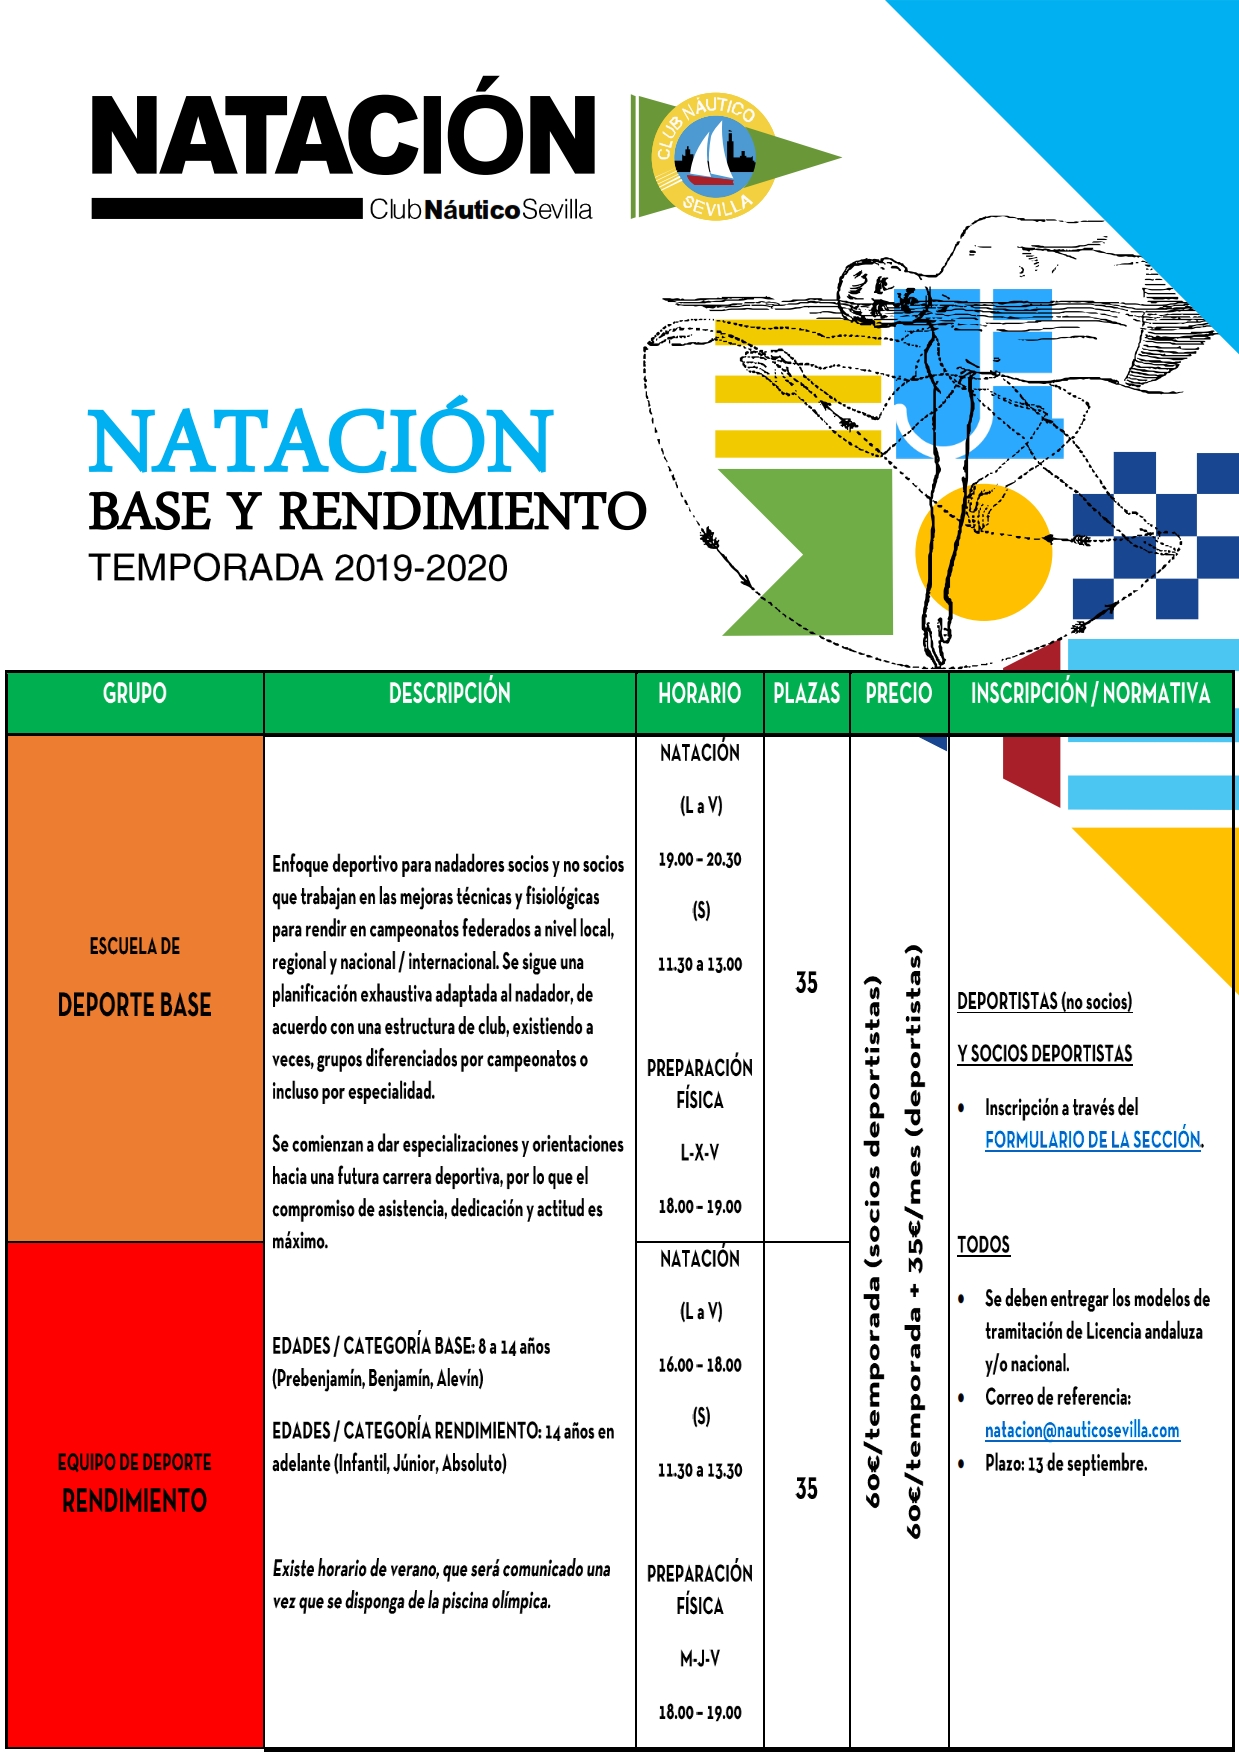 NATACION BASE Y RENDIMIENTO.jpg